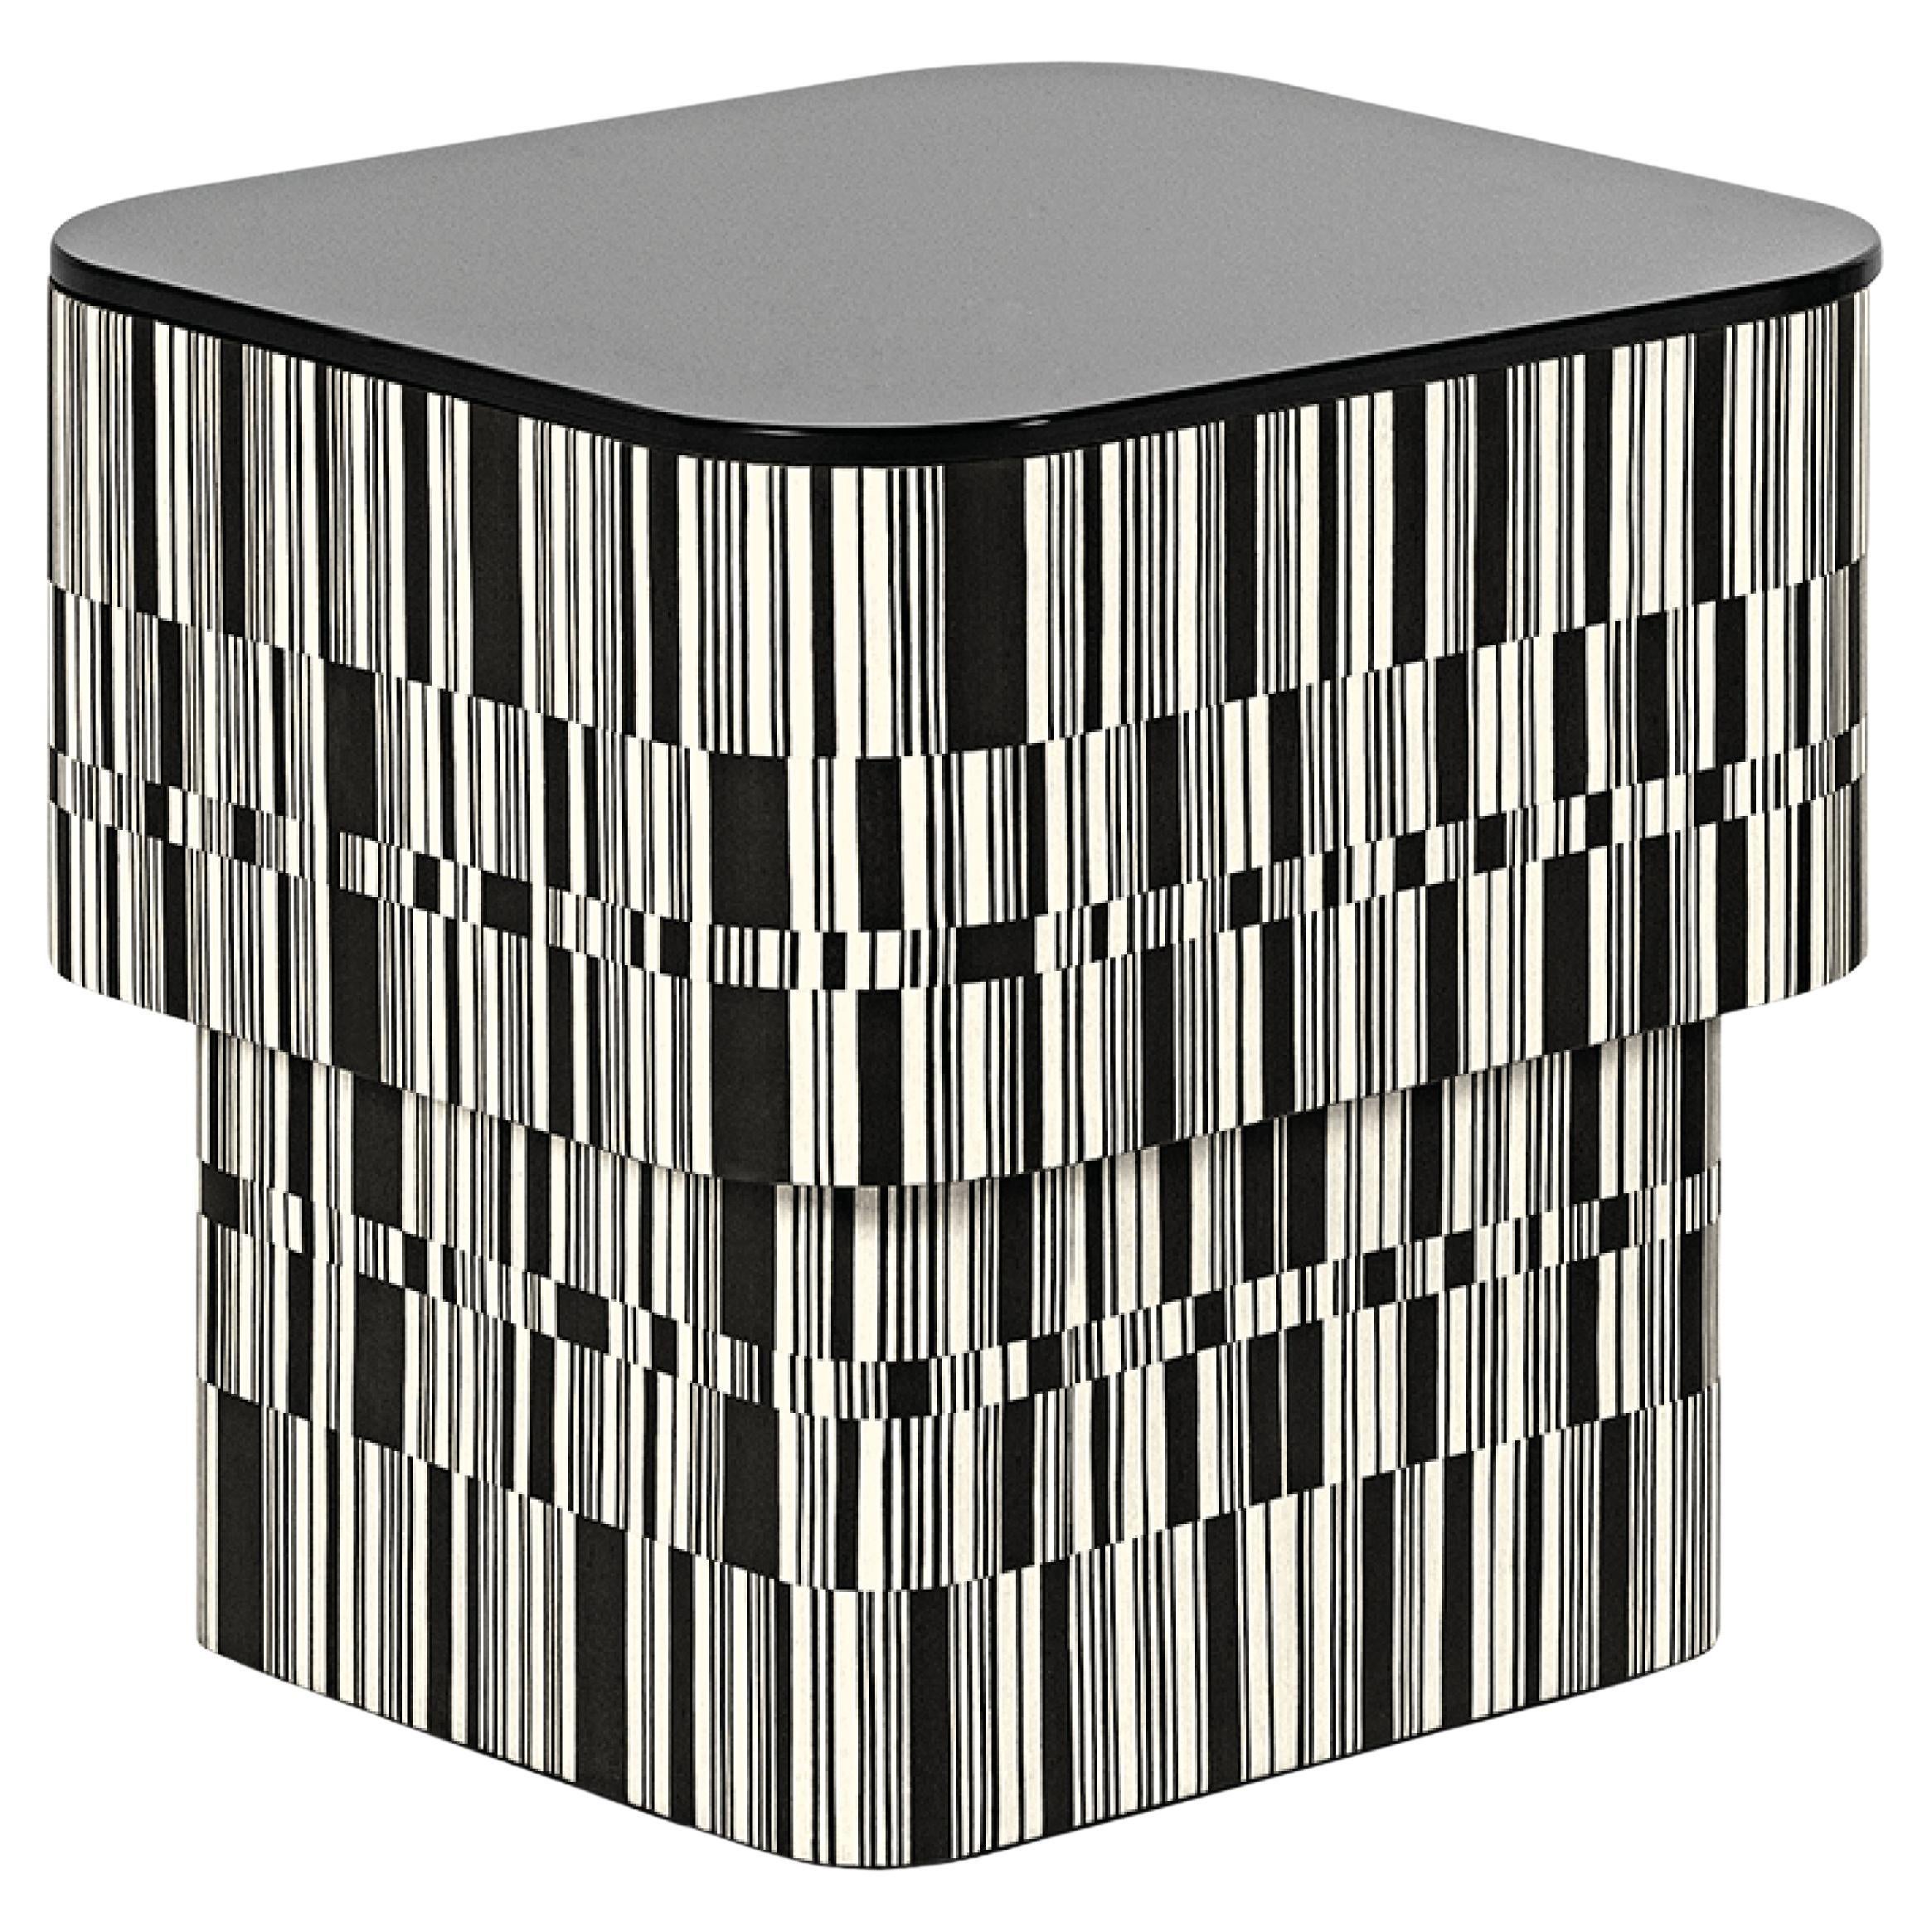 Table basse contemporaine par HESSENTIA, Bois marqueté noir et blanc, plateau en verre noir